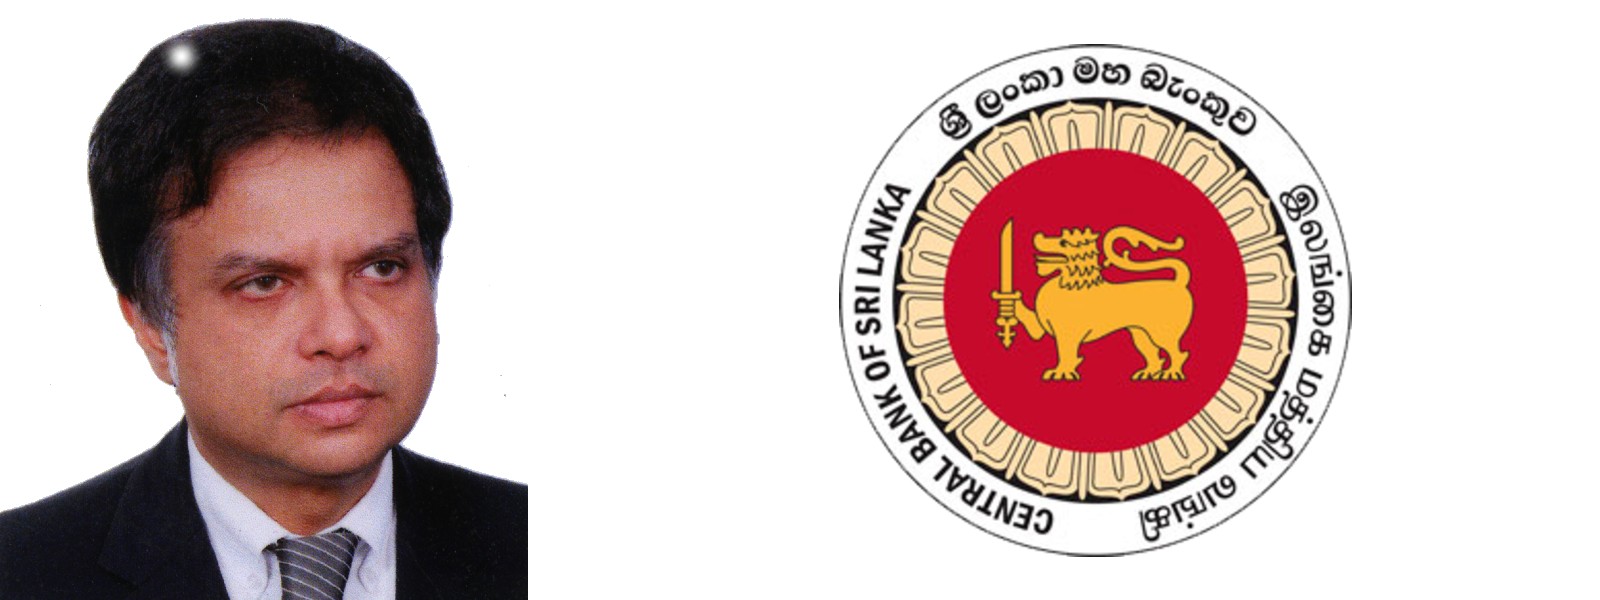 Sanjeeva Jayawardena PC re-appointed to Monetary Board of CBSL